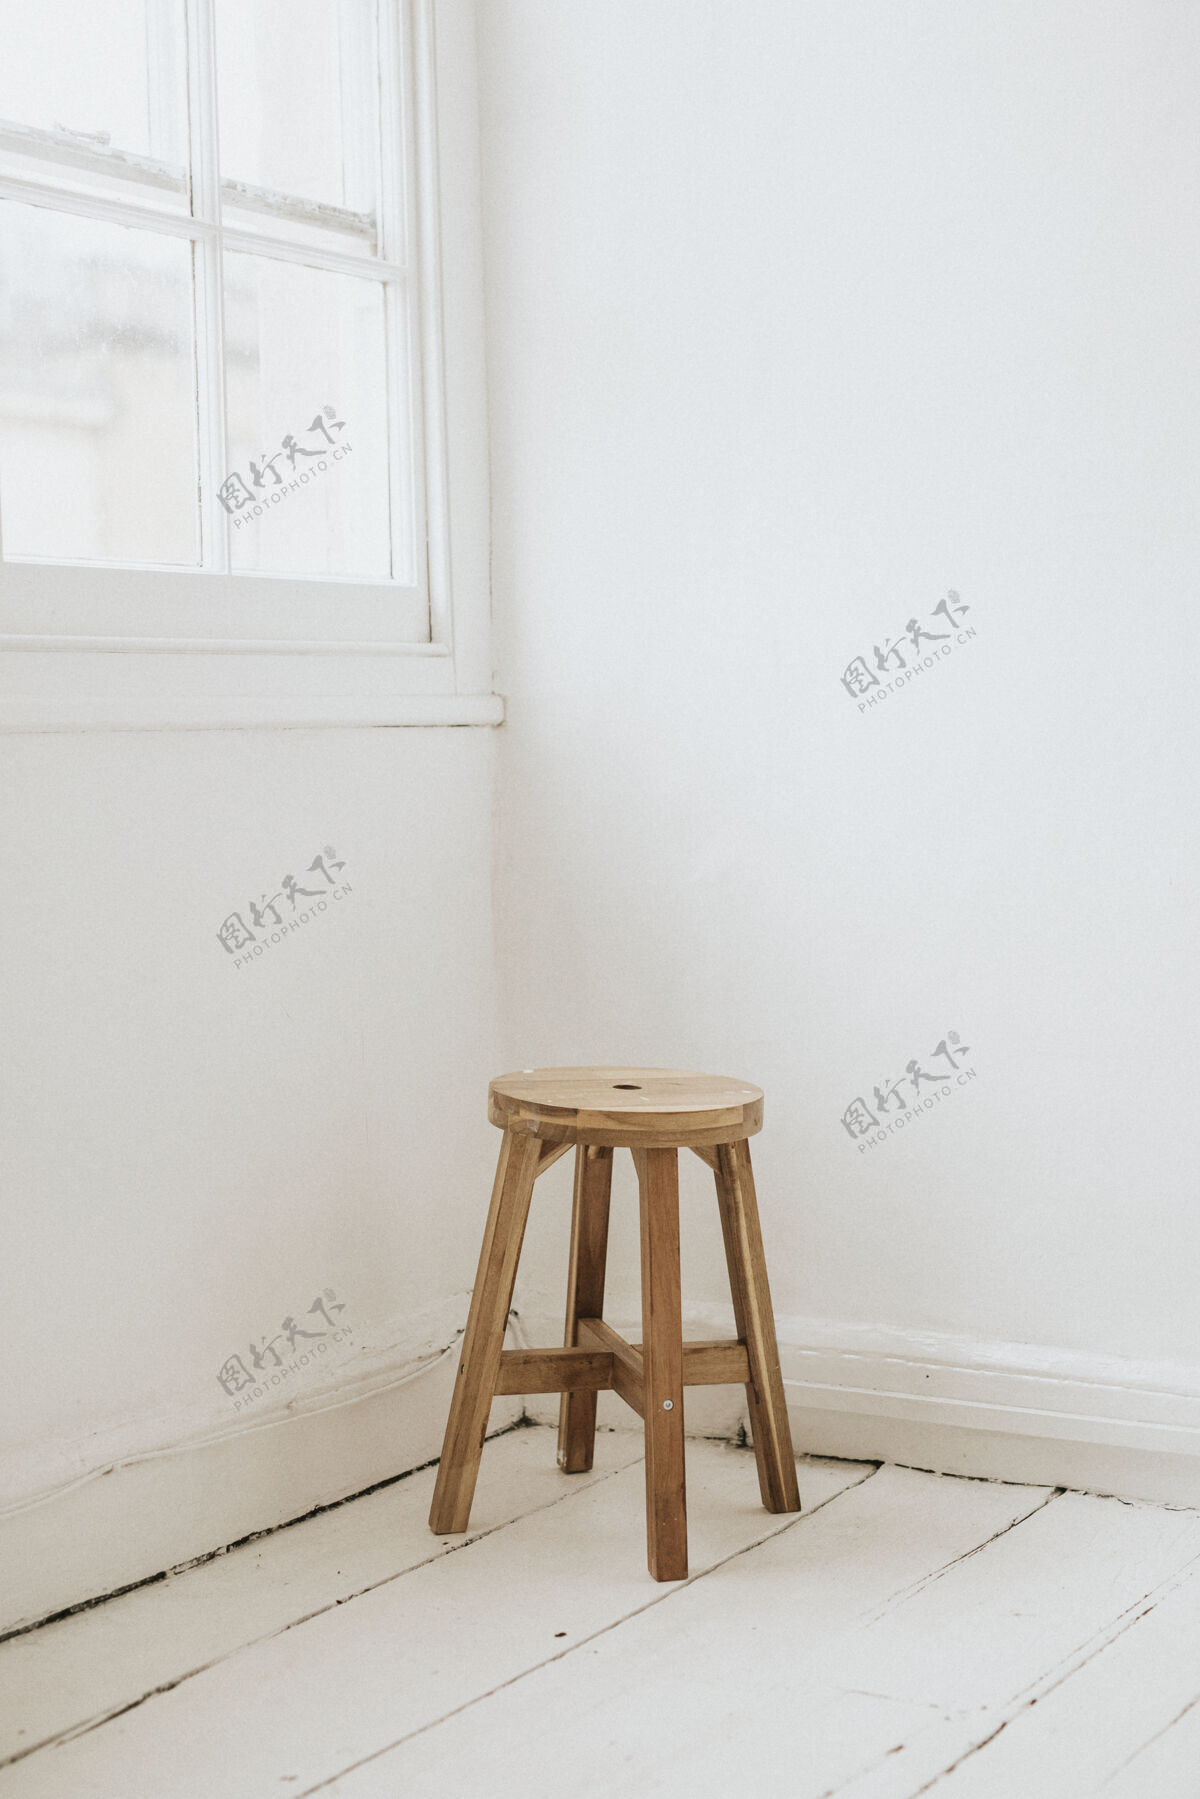 椅子房间角落里的木凳角落木材凳子